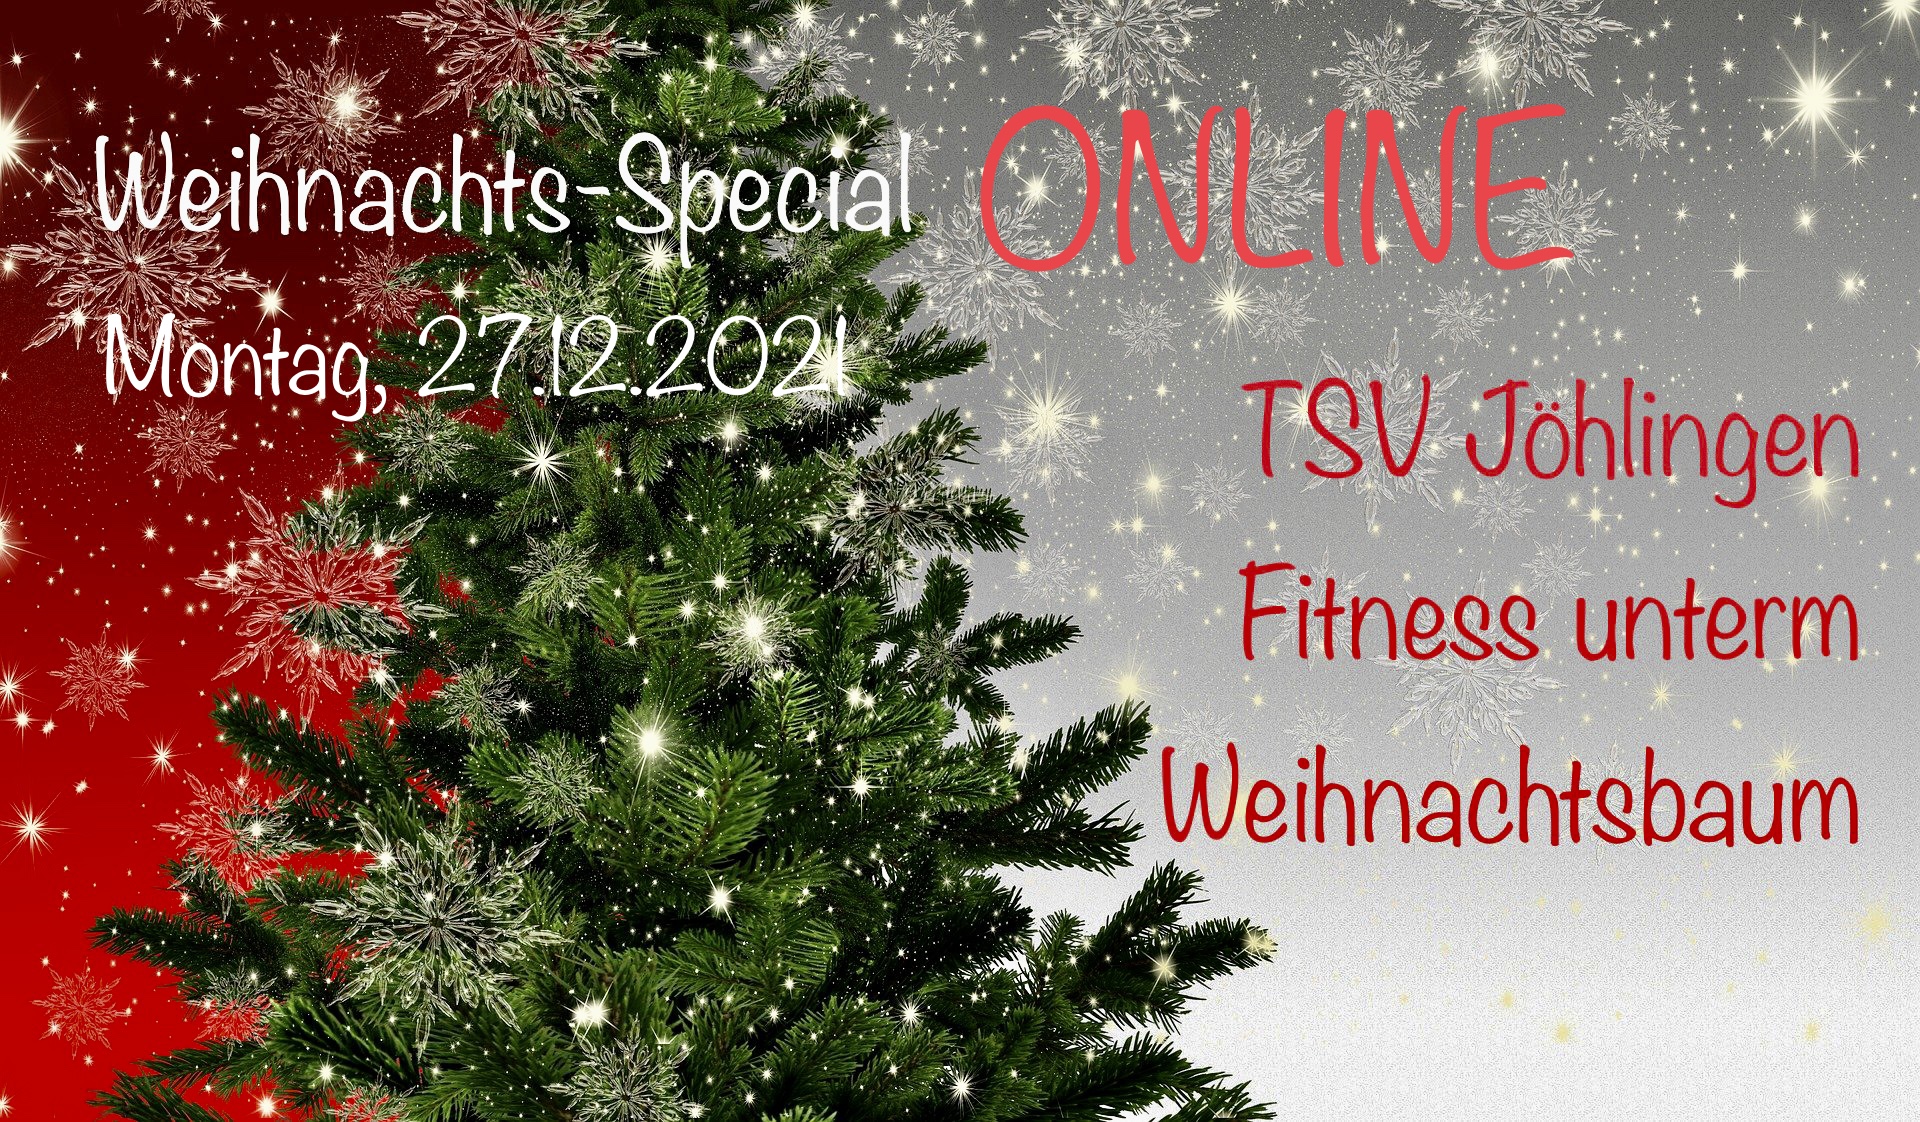 Weihnachts-Special: Fitness unterm Weihnachtsbaum  ONLINE